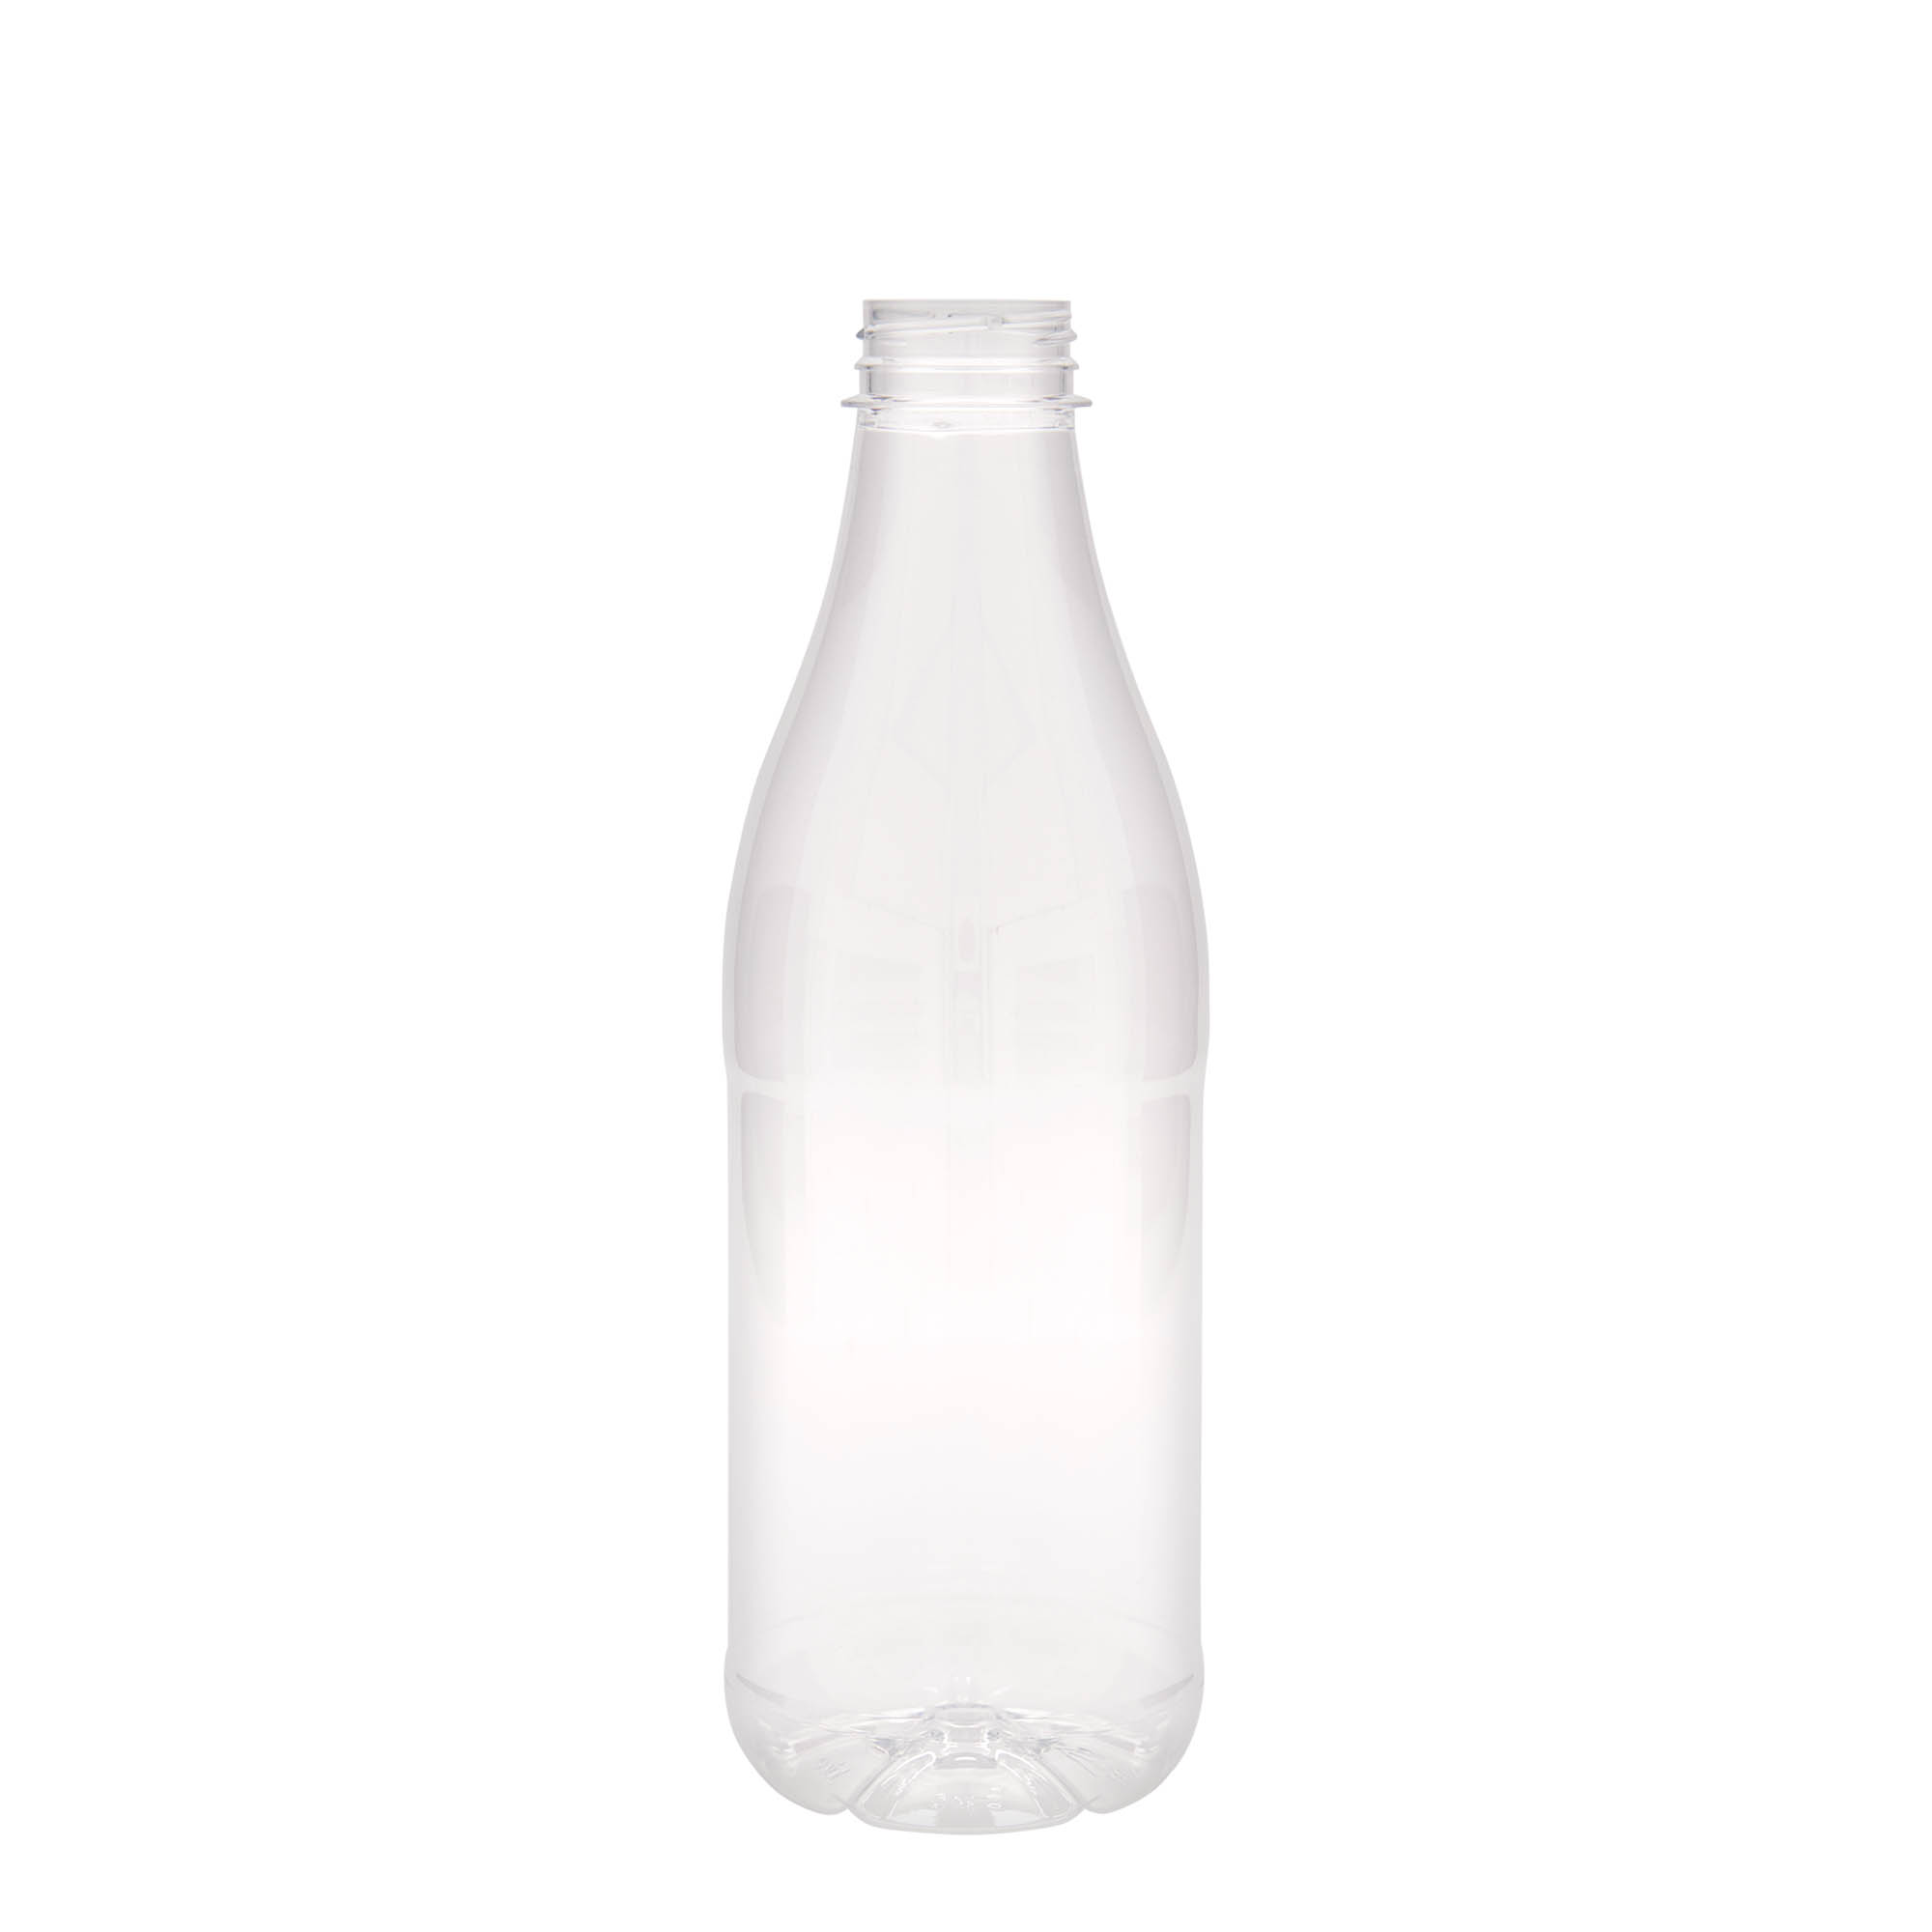 1 000 ml PET-flaska 'Milk and Juice', plast, mynning: 38 mm